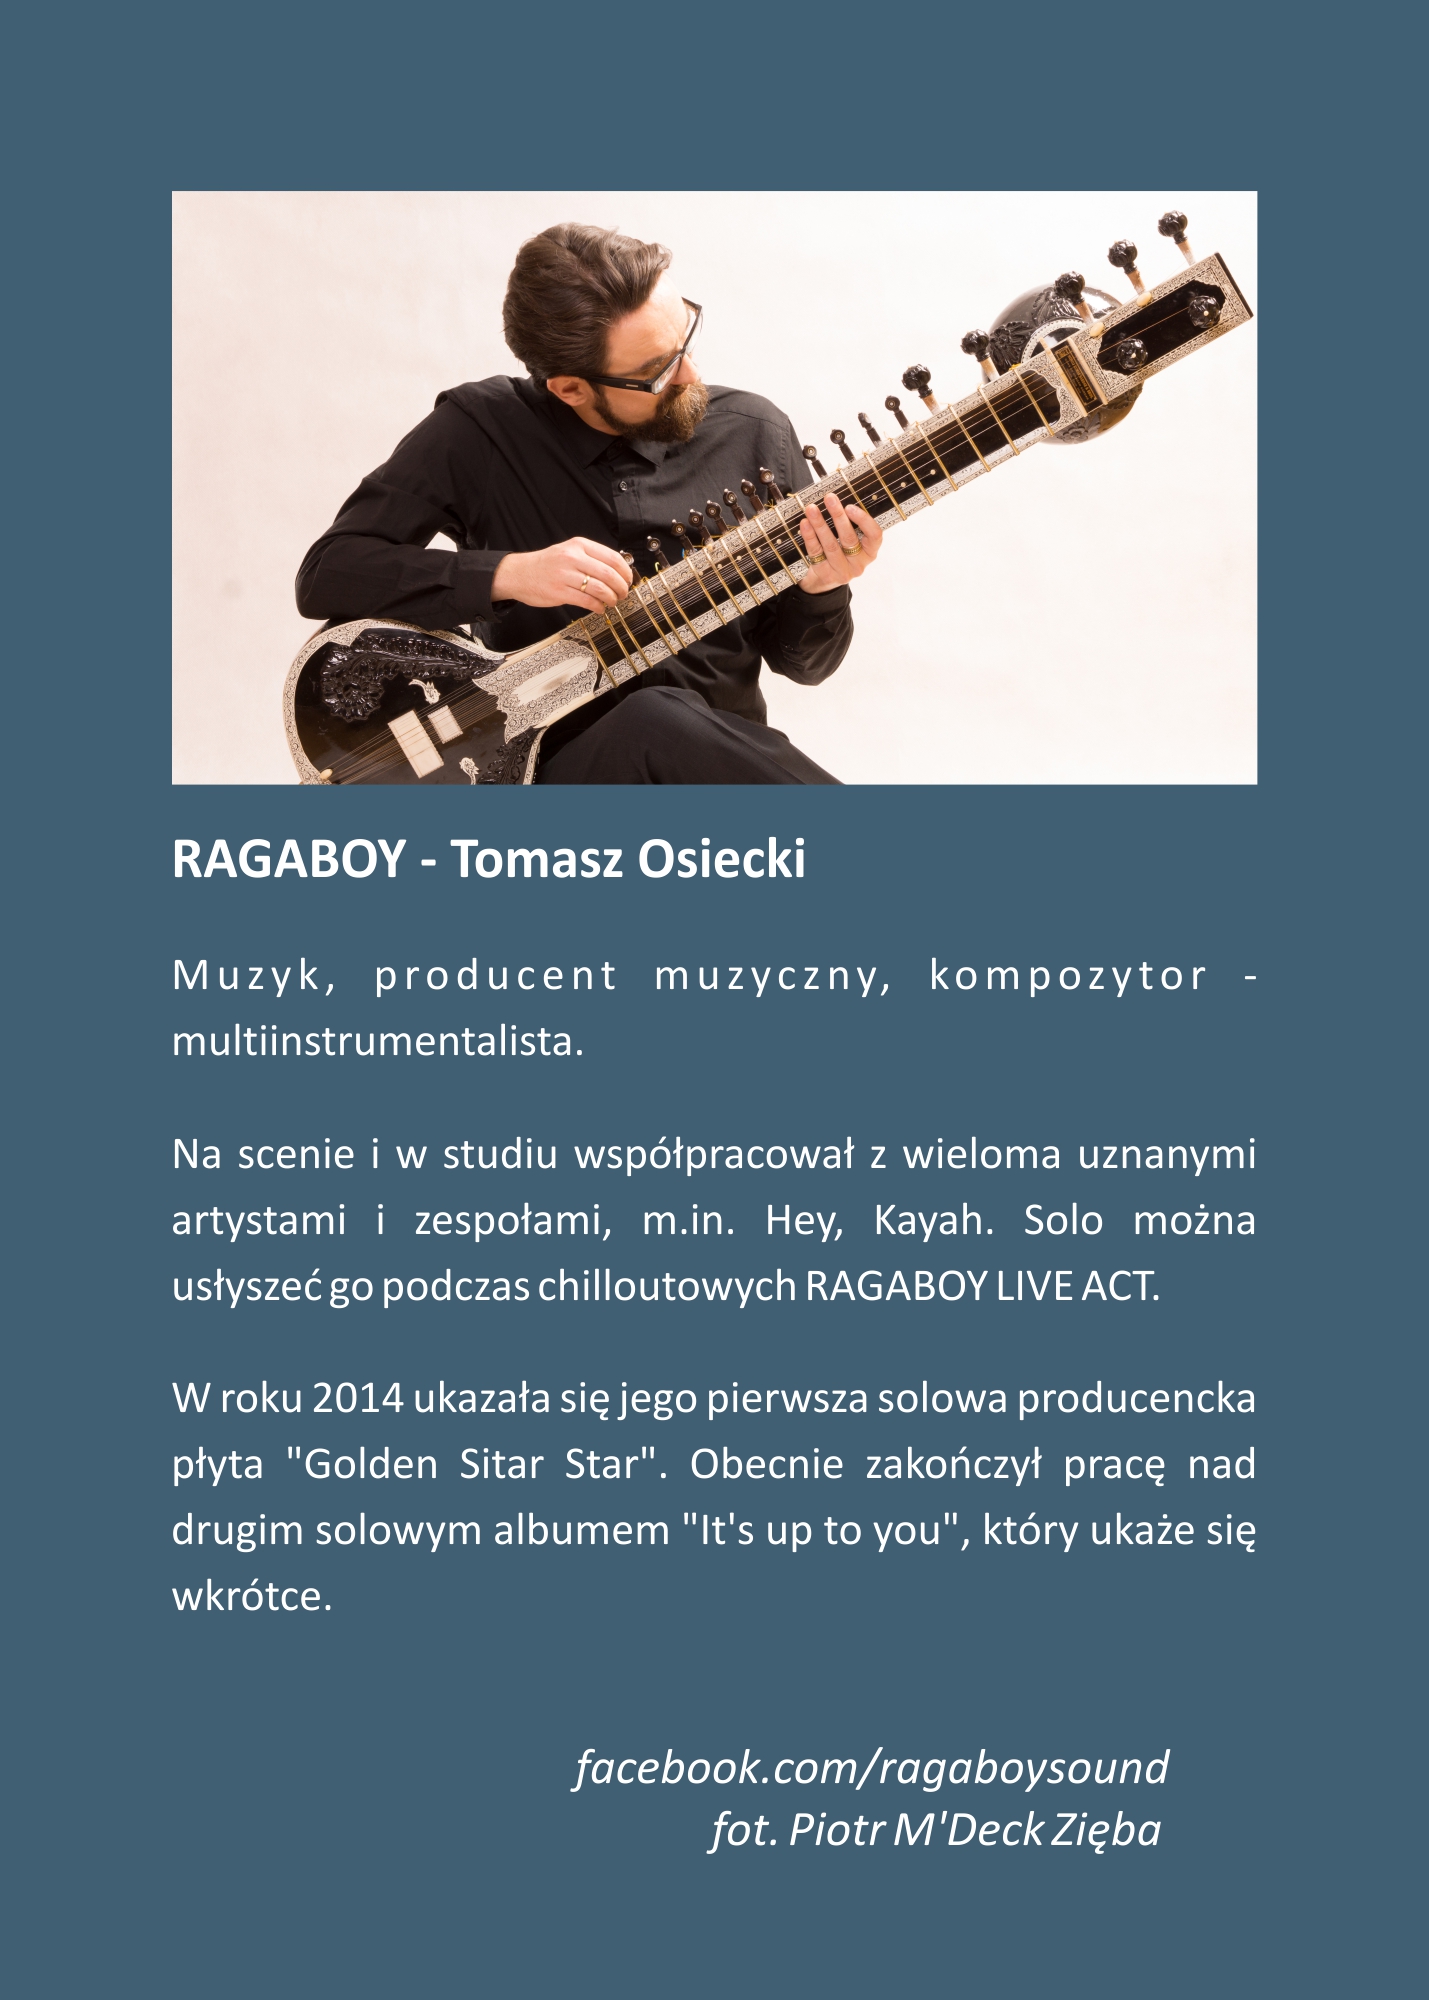 RAGABOY - Tomasz Osiecki. Muzyk, producent muzyczny, kompozytor - multiinstrumentalista. Na scenie i w studiu współpracował z wieloma uznanymi artystami i zespołami, m.in. Hey, Kayah. Solo można usłyszeć go podczas chilloutowych RAGABOY LIVE ACT. W roku 2014 ukazała się jego pierwsza solowa producencka płyta 